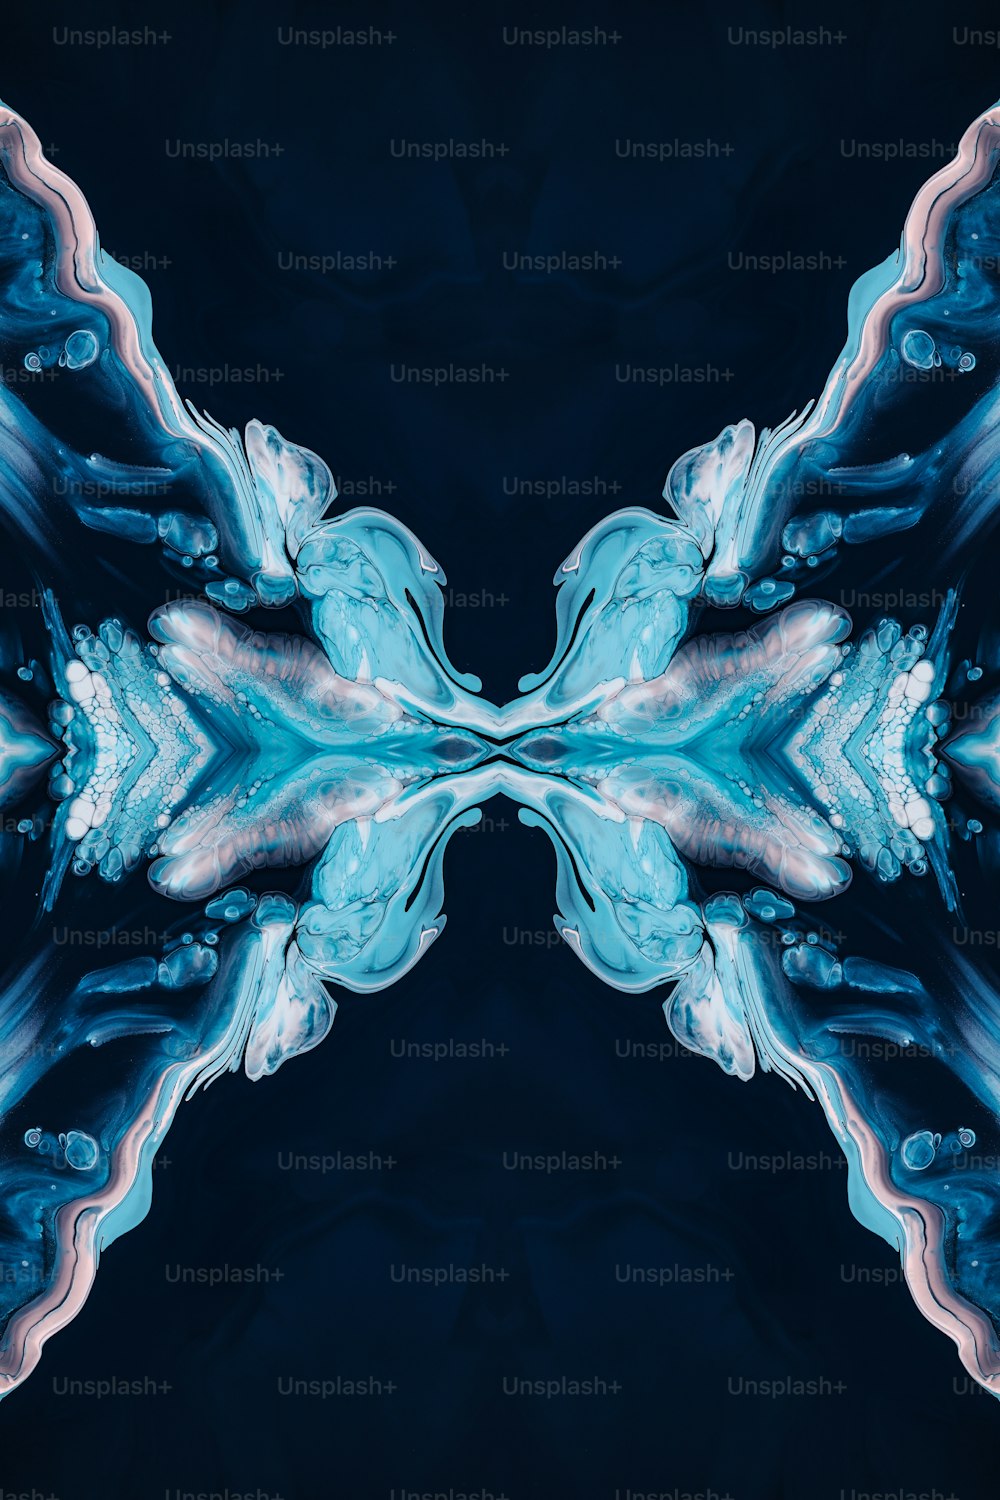 Un'immagine astratta di forme blu e bianche